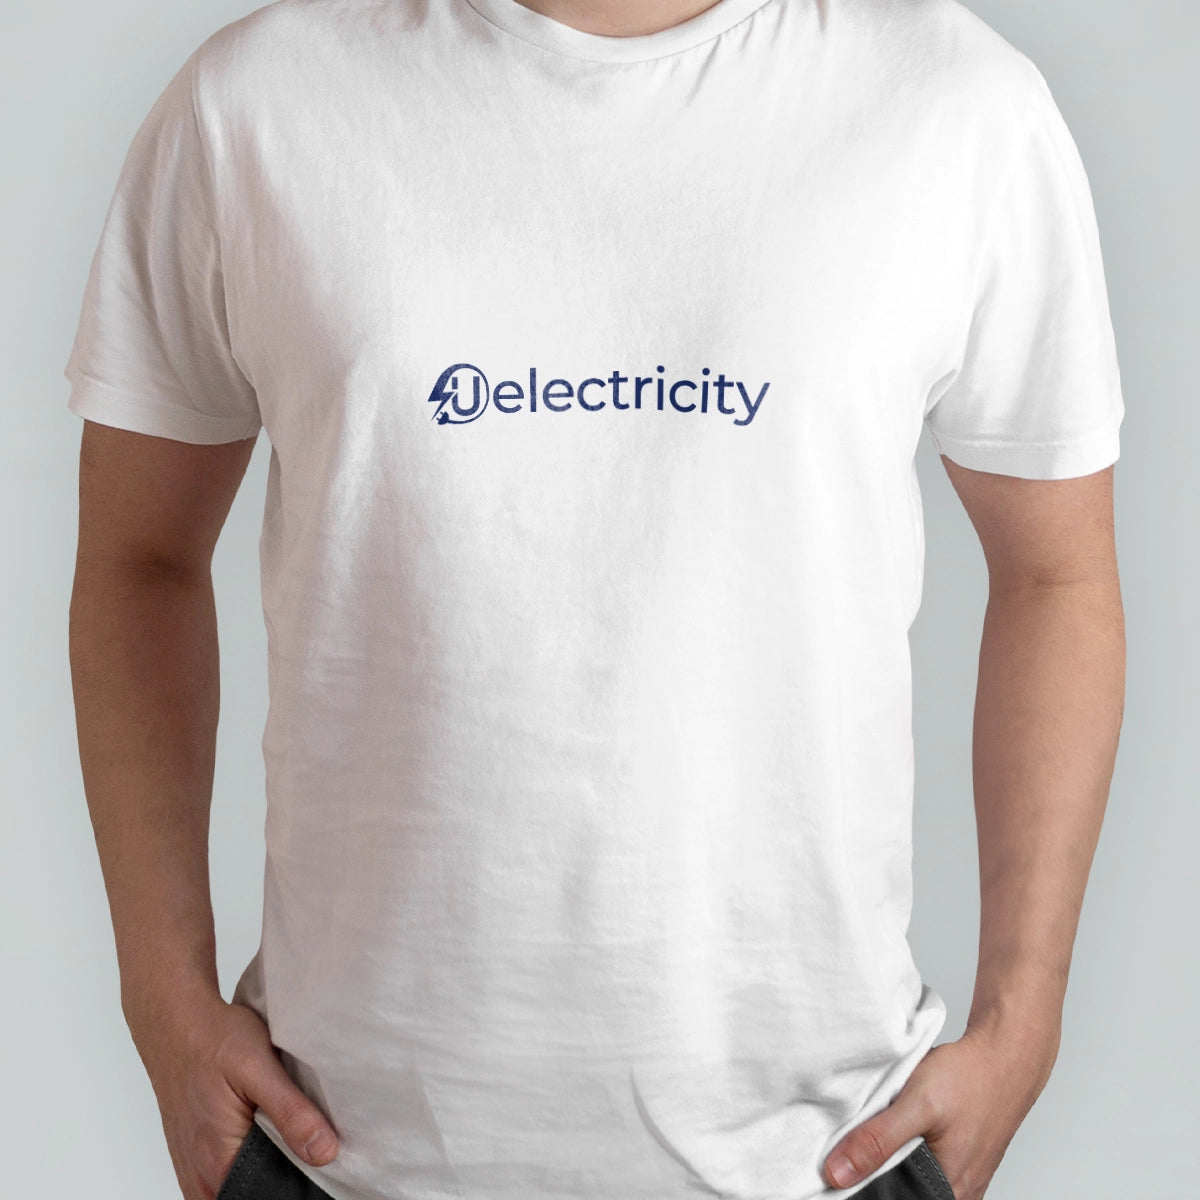 uelectricity.com